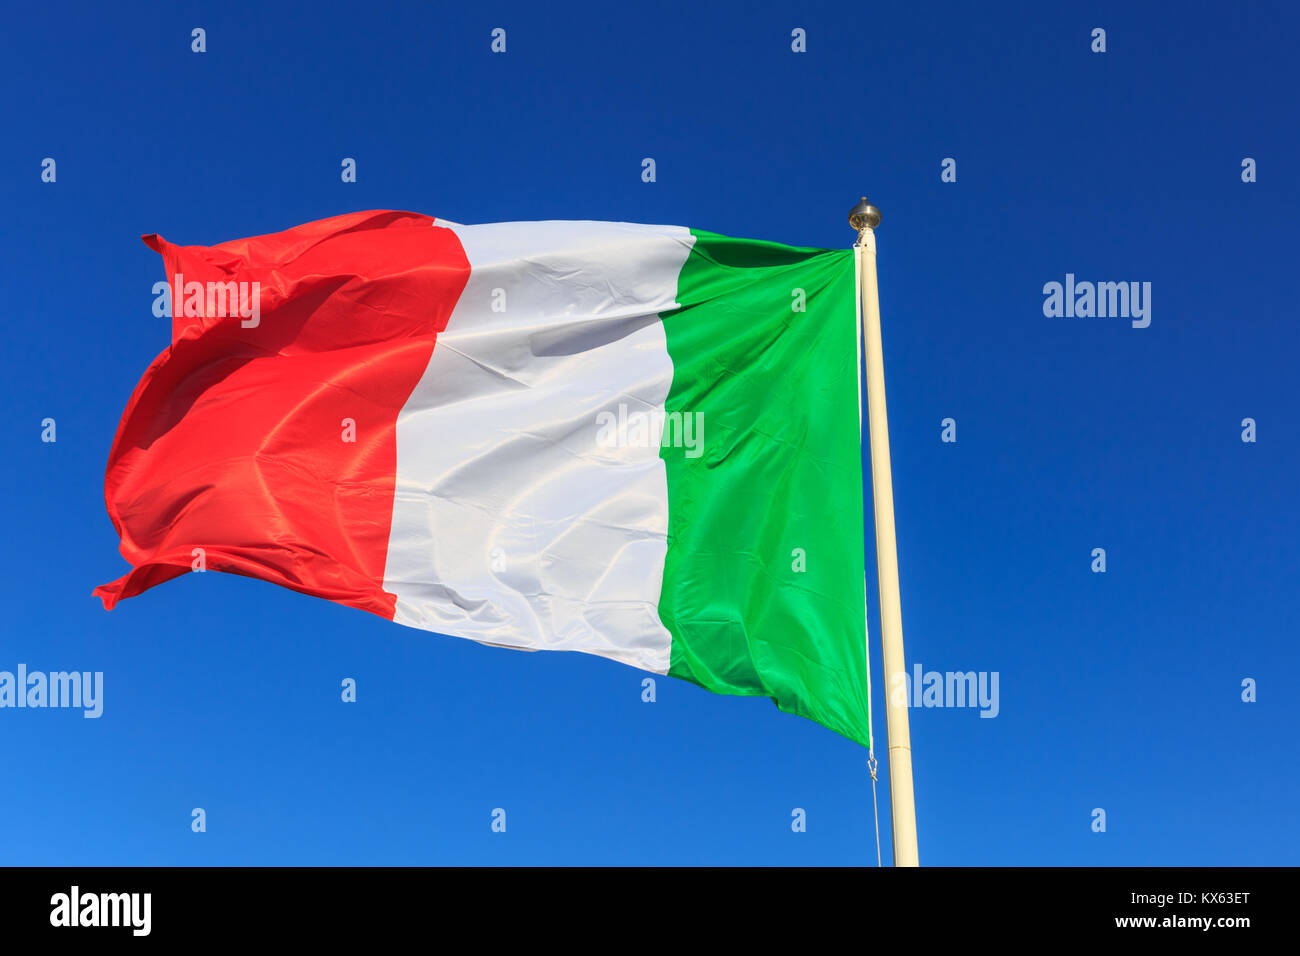 The Italian National flag flying on a pole against clear deep blue sky Stock Photo